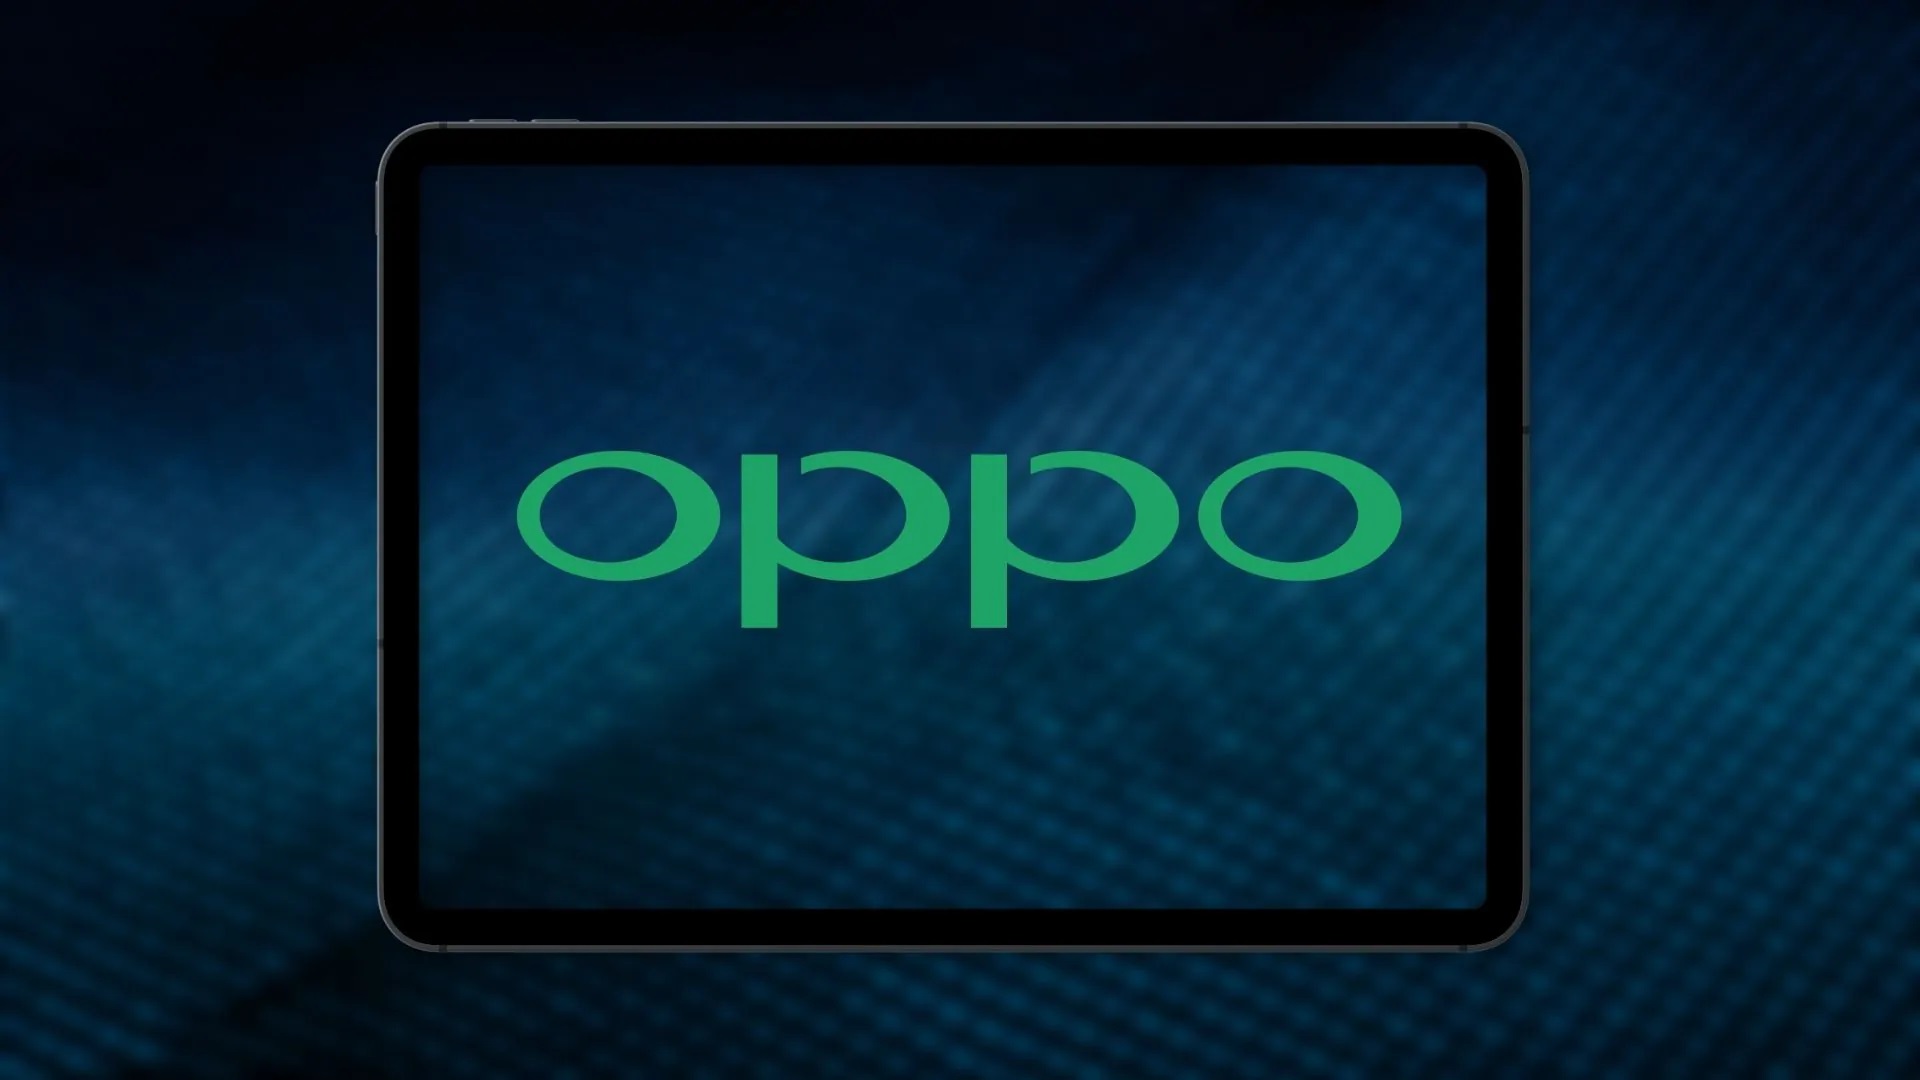 La tablette OPPO Pad, le smartphone Find X5 et les écouteurs Enco X2 TWS ont été accidentellement montrés, et l'annonce arrive bientôt sur l'affiche publicitaire